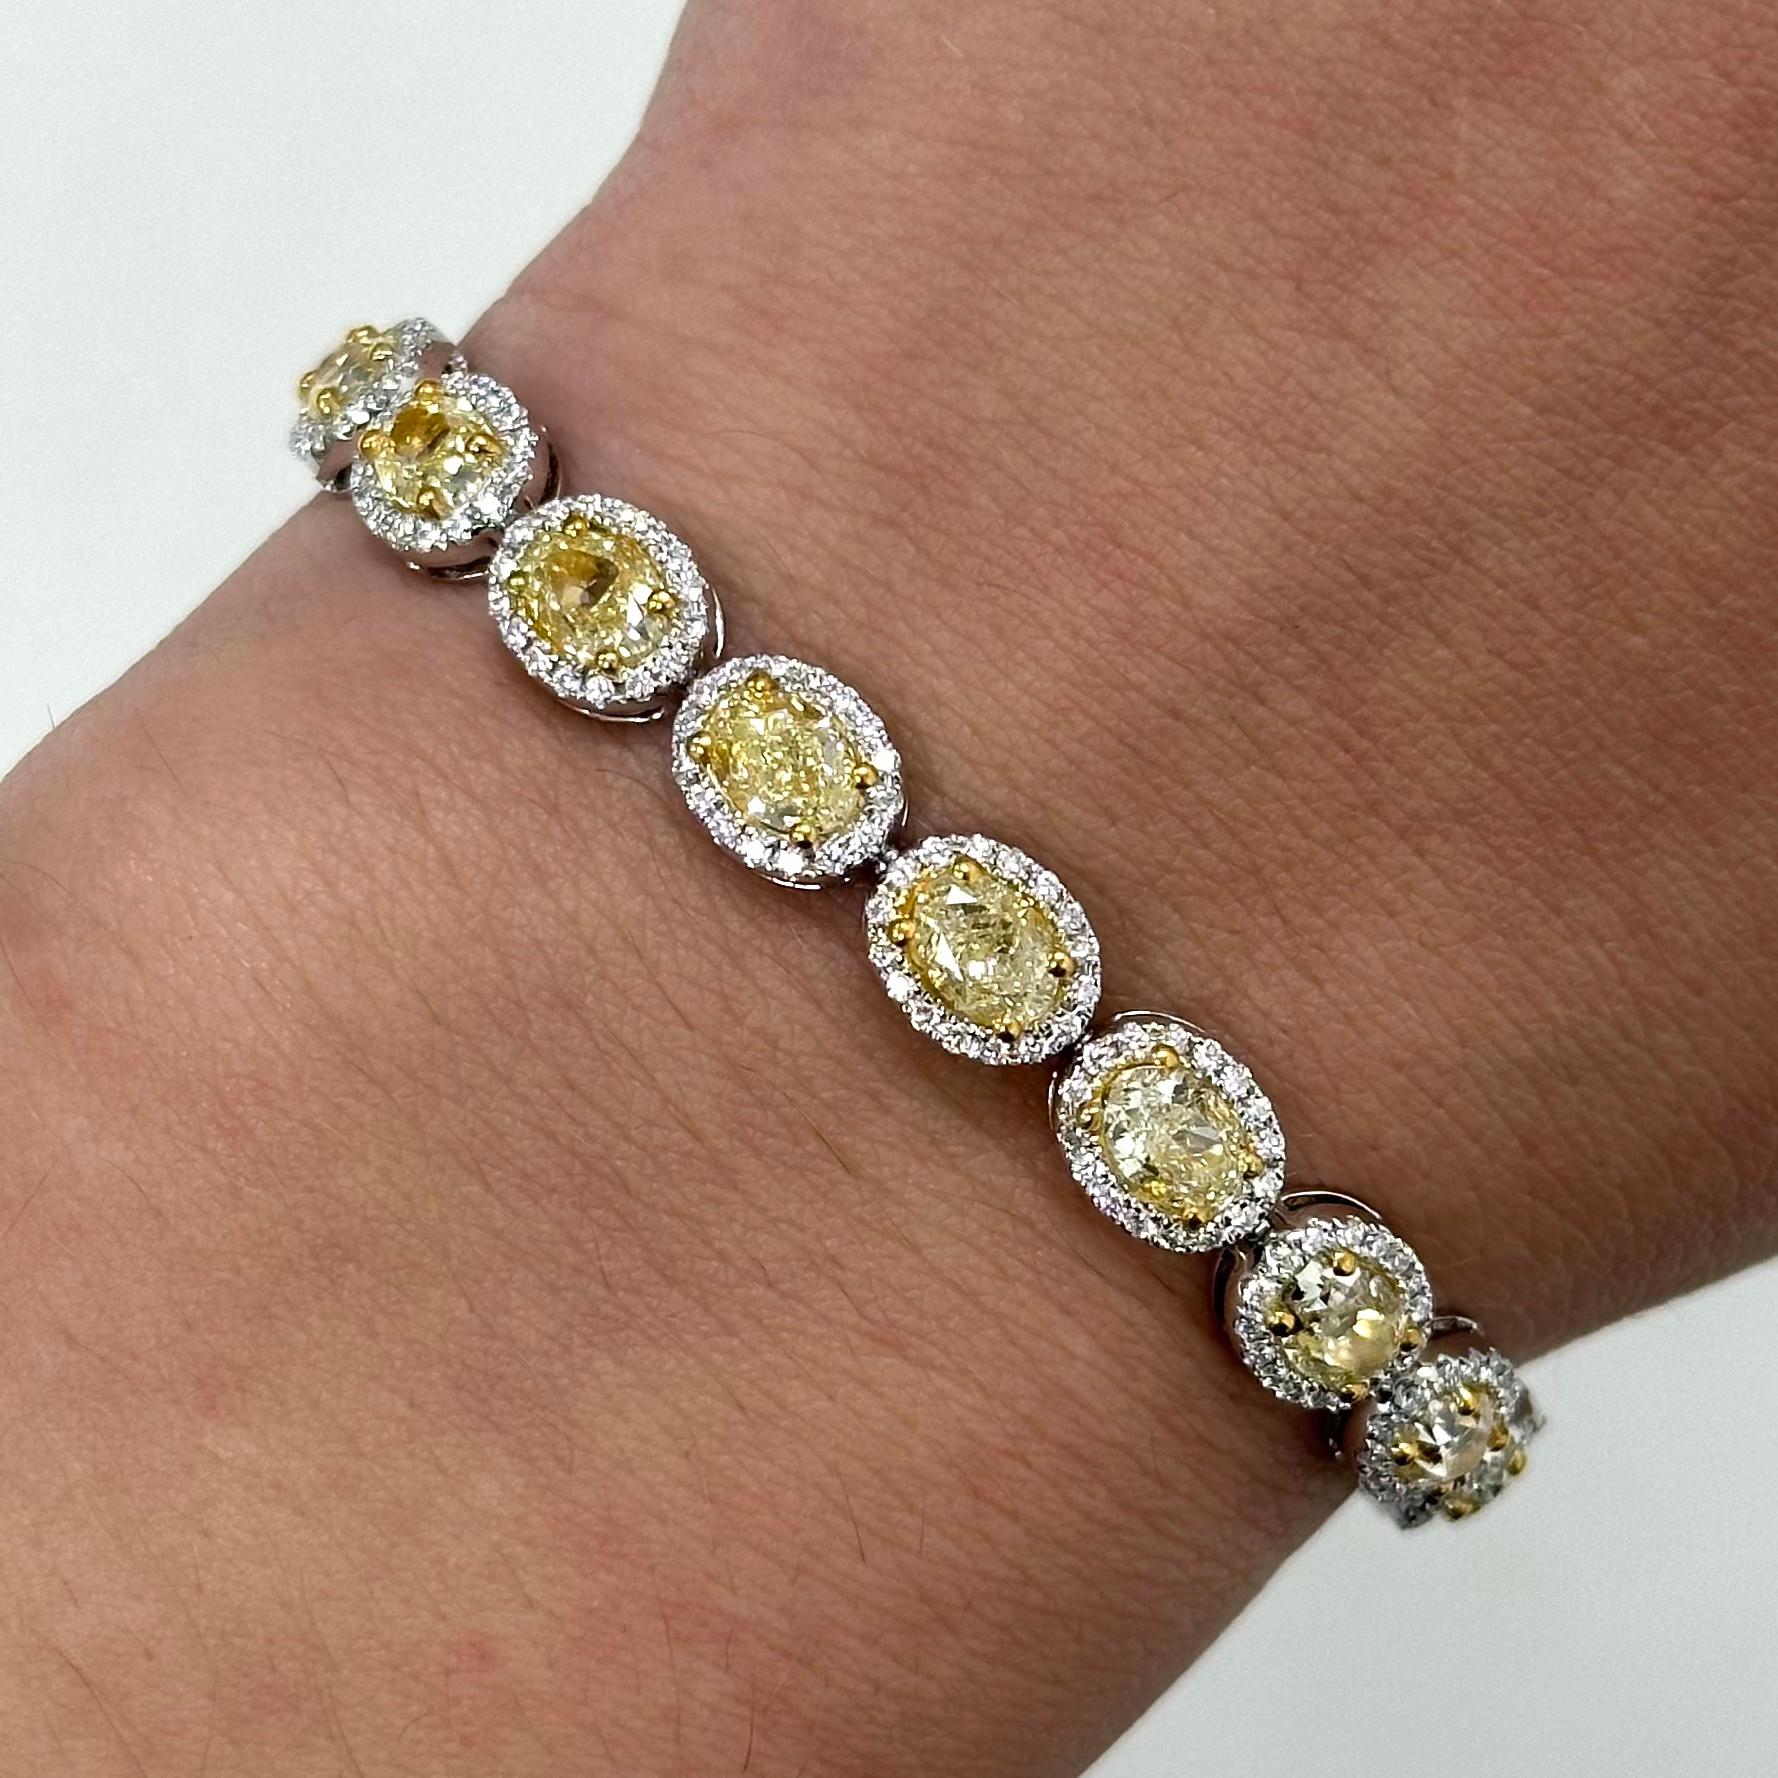 Superbe bracelet en diamant ovale jaune en or bicolore 18 carats, haute joaillerie Alexander Beverly Hills.
Poids total des diamants : 11,14 carats.
22 diamants ovales, 9,81 carats. Couleur jaune clair fantaisie/fantaisie et pureté VS. Il est